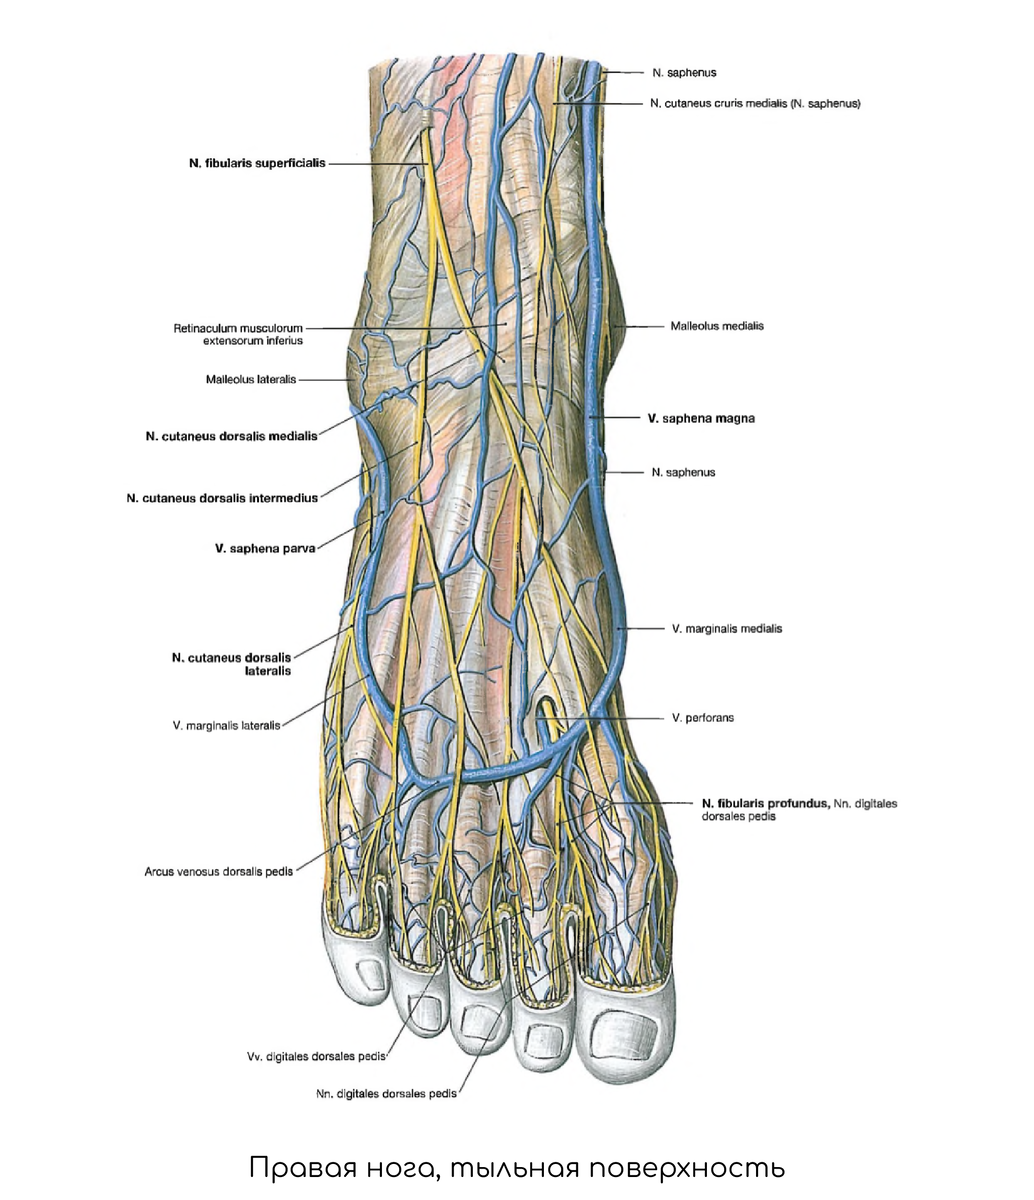 Артерия дорсалис педис проекция. Тыльная артериальная дуга стопы. Основные артерии стопы